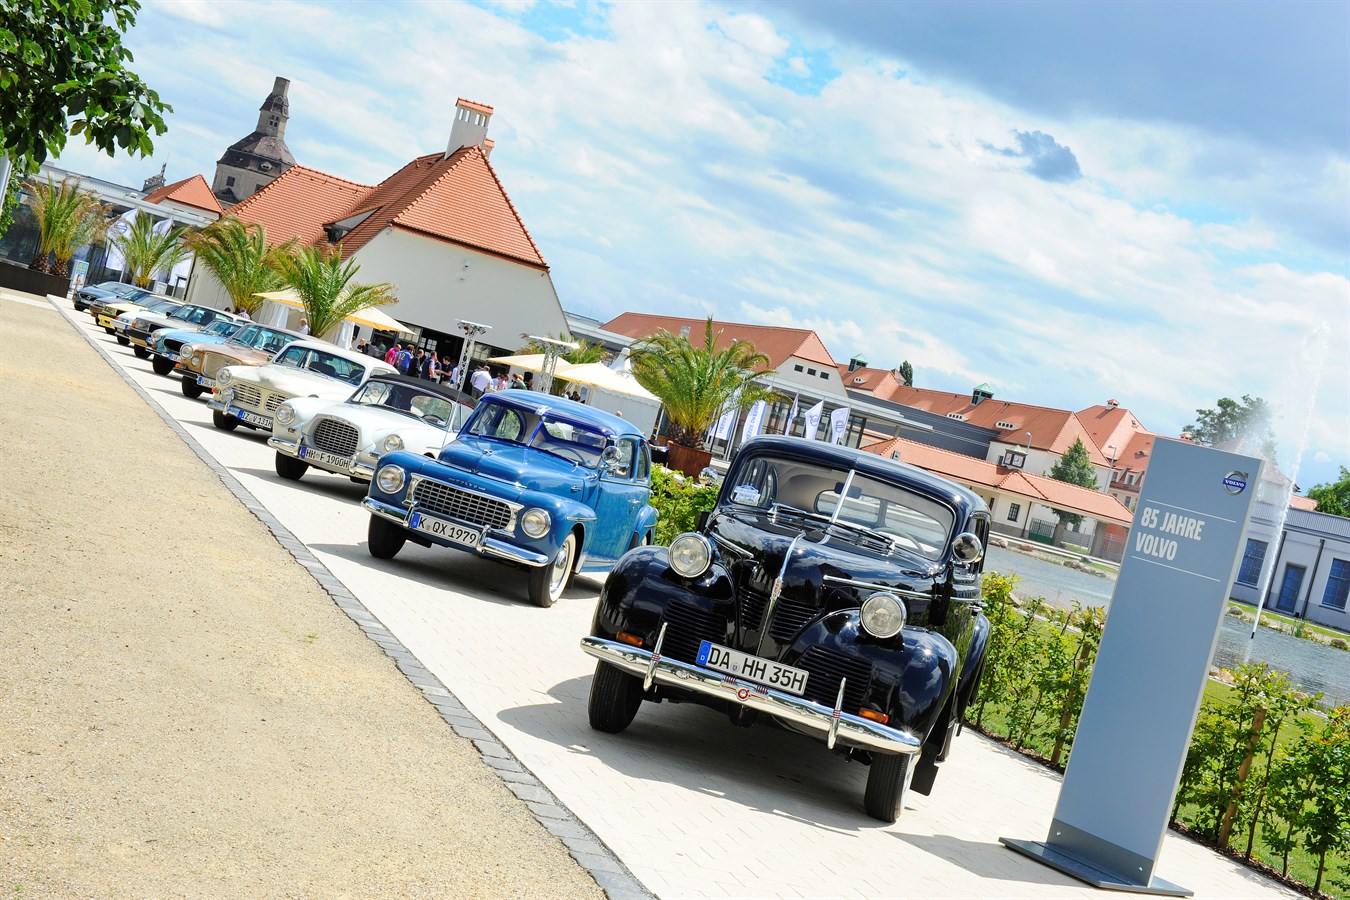 85 Jahre Volvo: Parade der Volvo Oldtimer